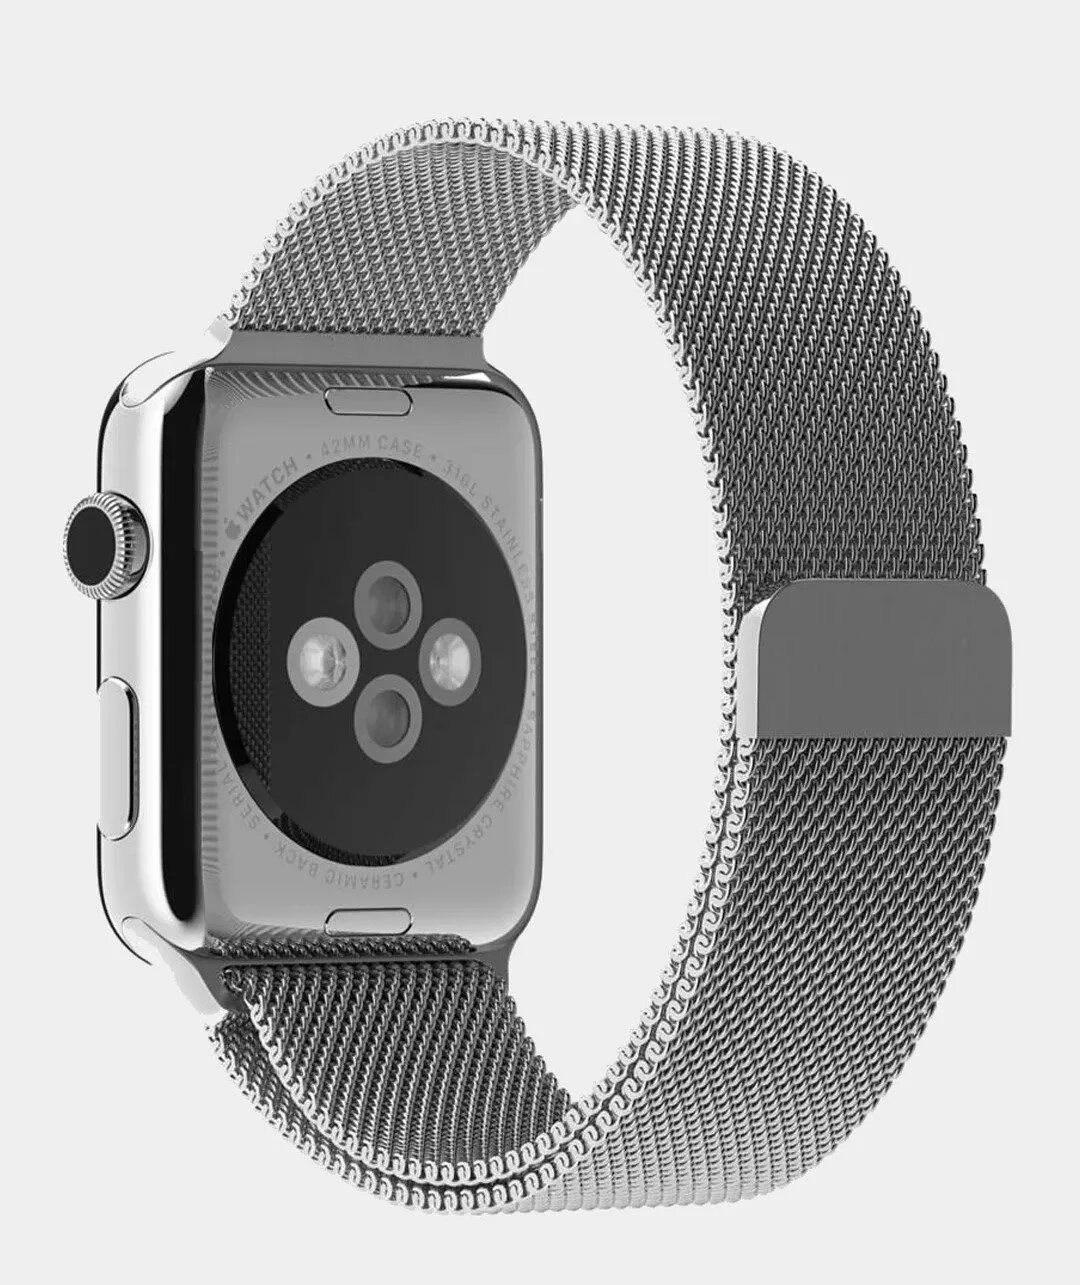 Ремешок Apple 40mm Gold Milanese loop. Ремешок Эппл вотч Миланская петля. Ремешок для Apple watch 38mm. Ремешок Миланская петля для Apple watch.